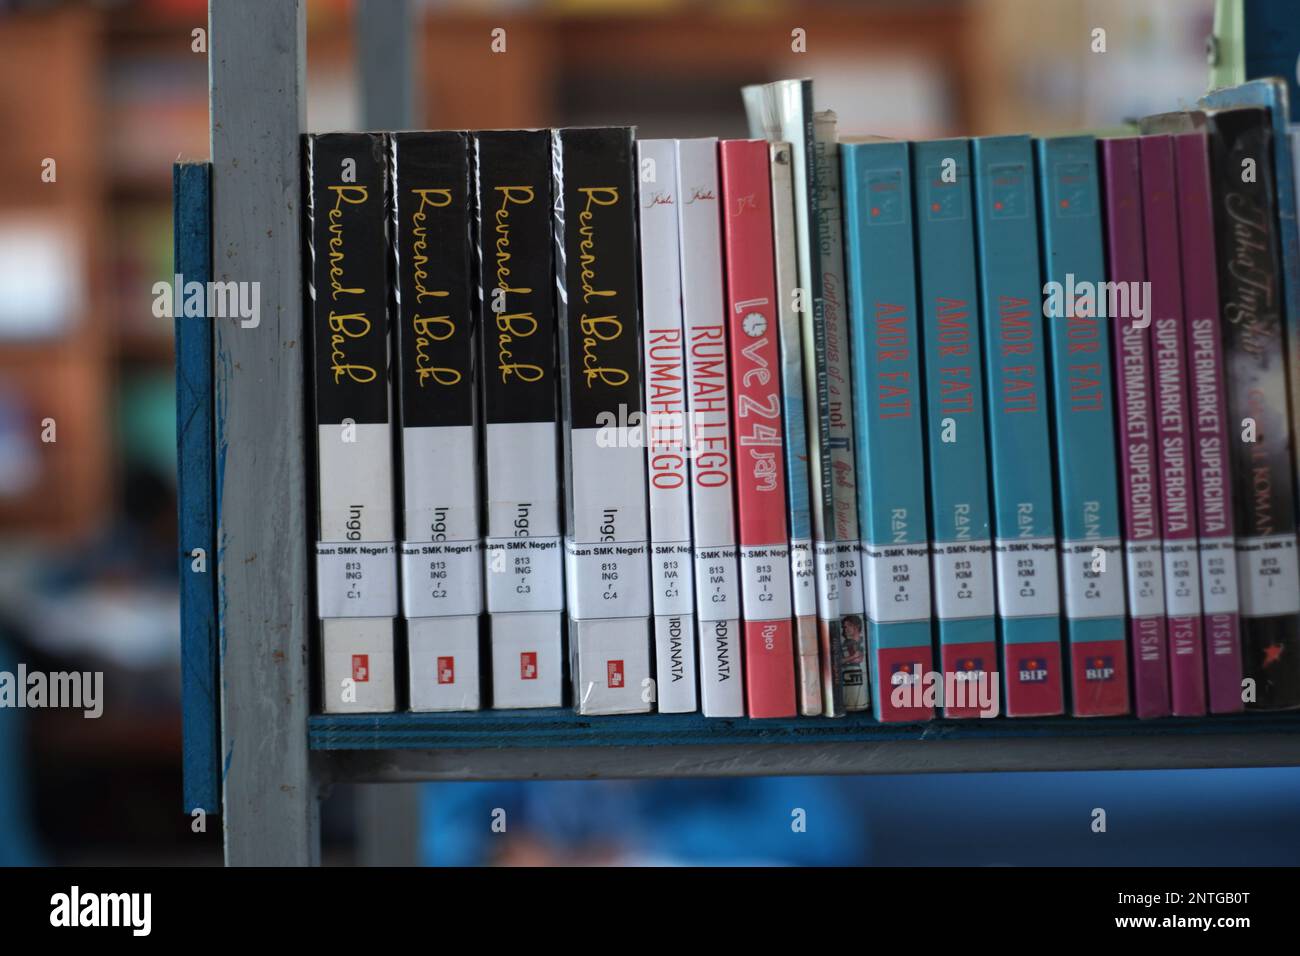 Un regard de près sur l'arrangement des manuels avec des couvertures colorées, à la fin de la tablette Banque D'Images